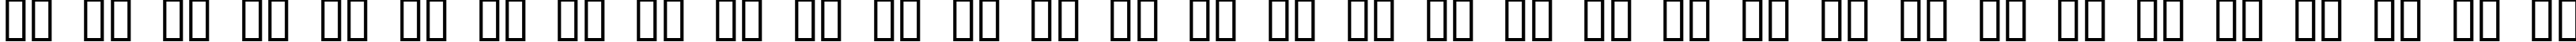 Пример написания русского алфавита шрифтом Quicksilver